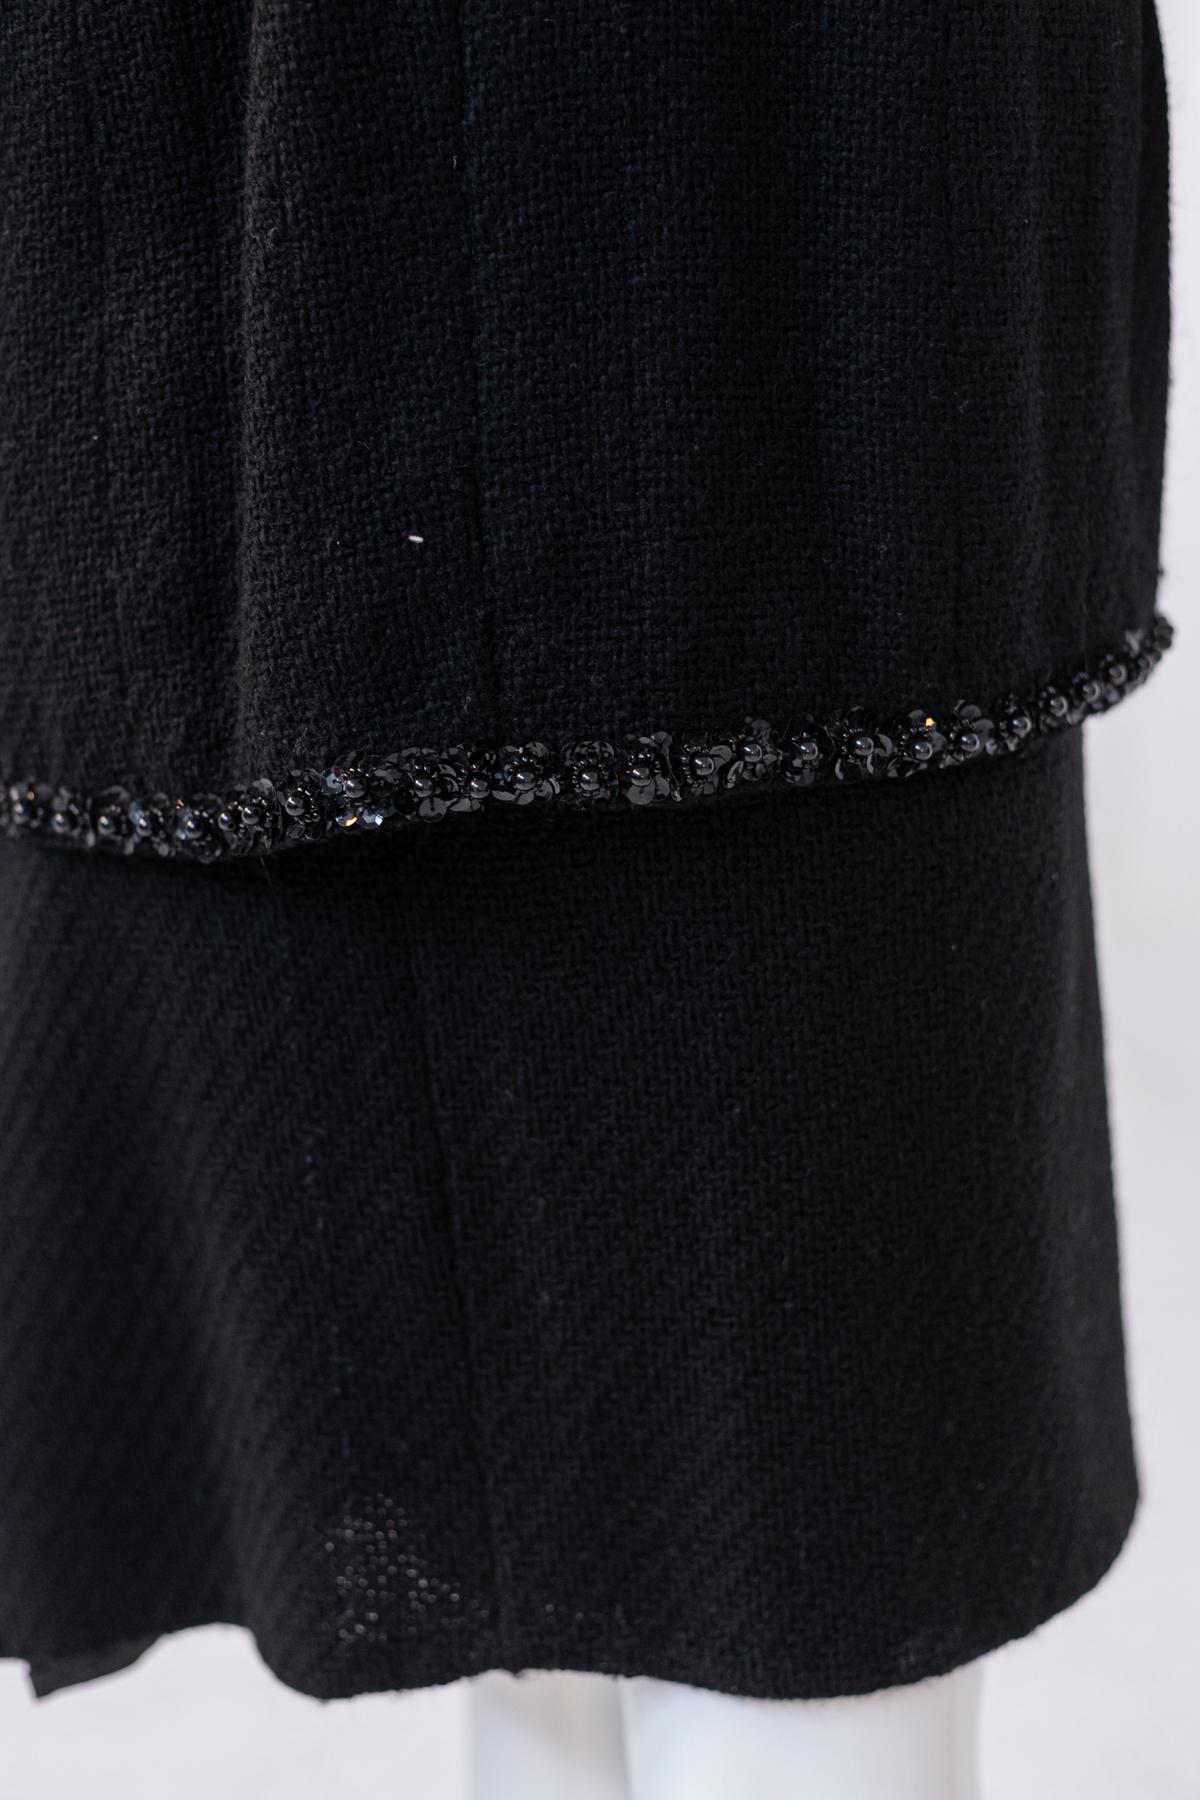 Elegant Vintage Black Skirt Suits with Fine Decoration For Sale 5